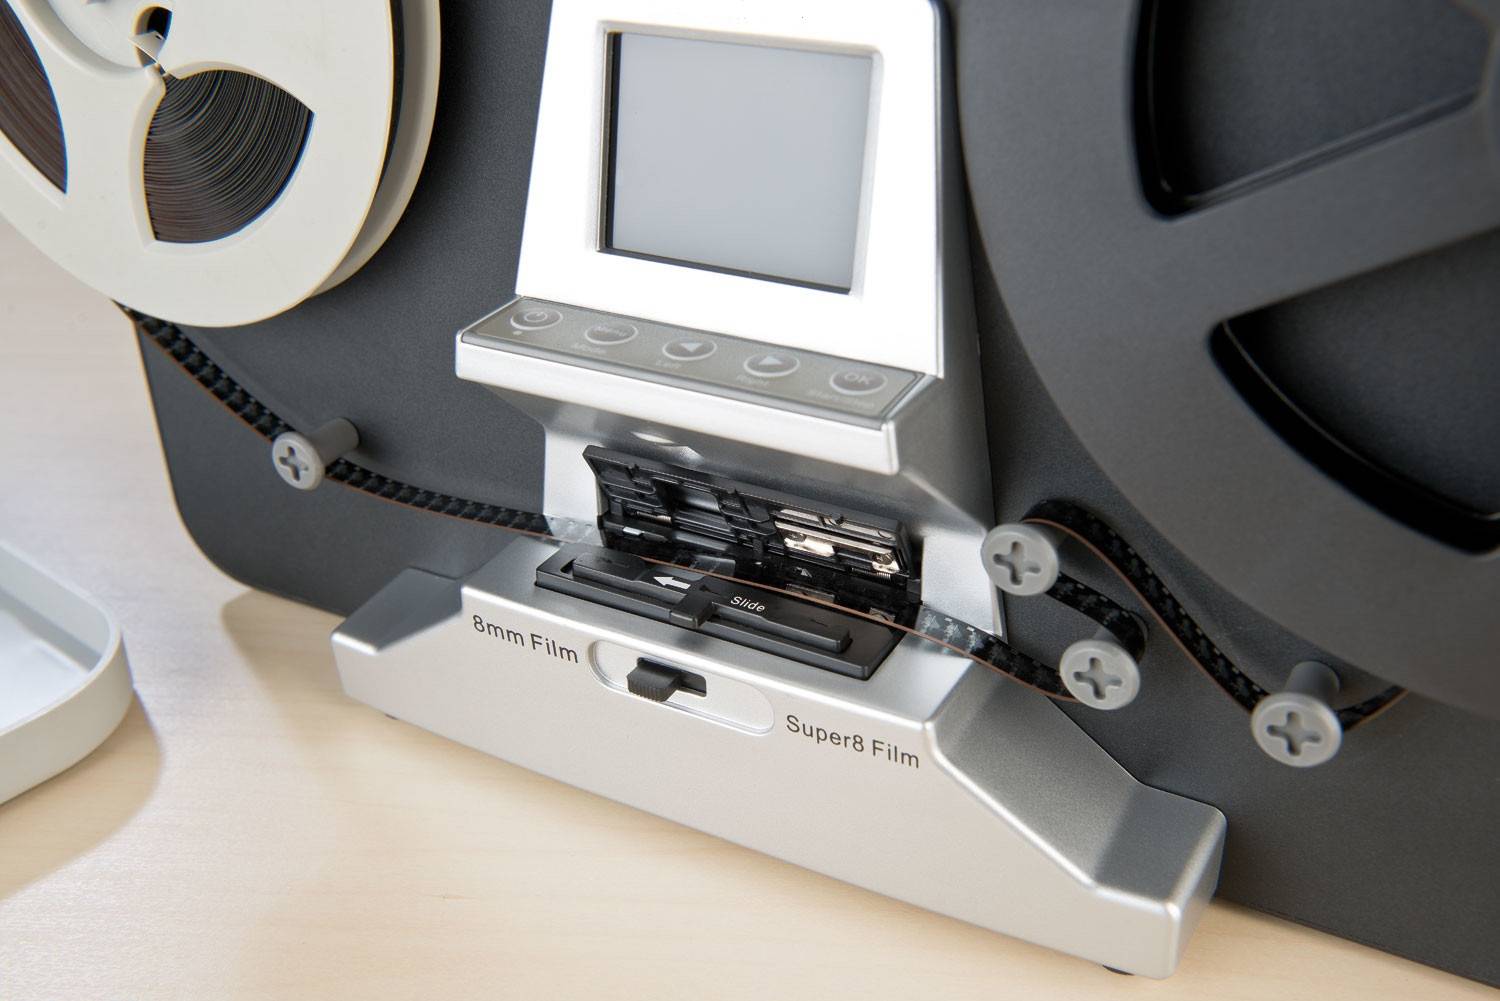 Numérisation et transfert de films Super 8 et 8mm